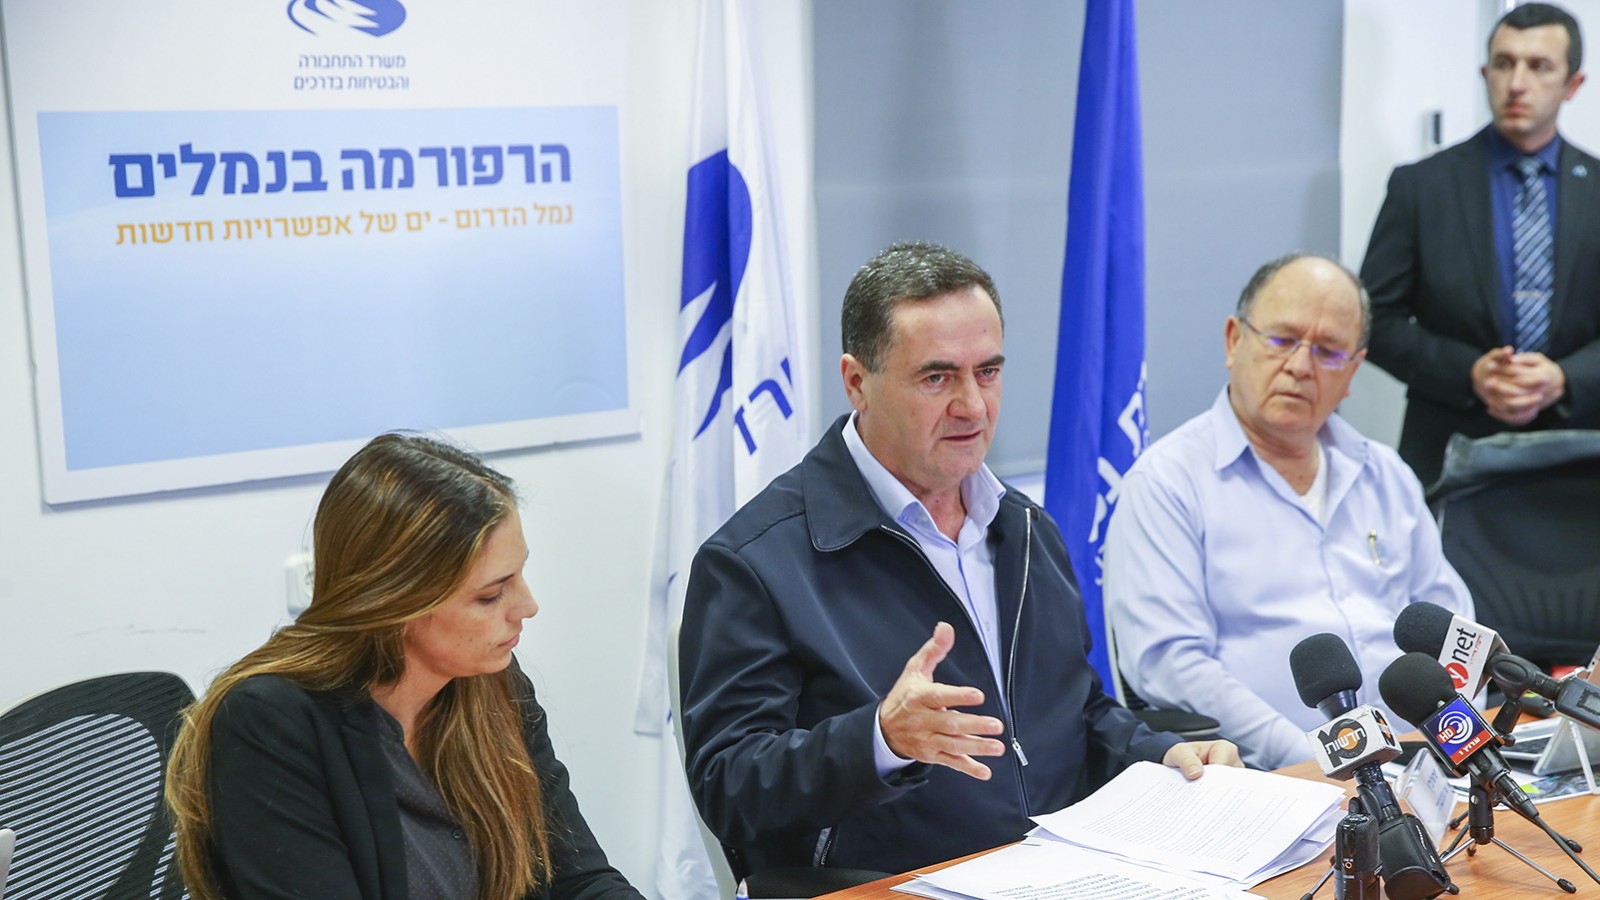 שר התחבורה ישראל כץ במסיבת עיתונאים באתר הבניה של נמל אשדוד החדש (צילום: פלאש90)